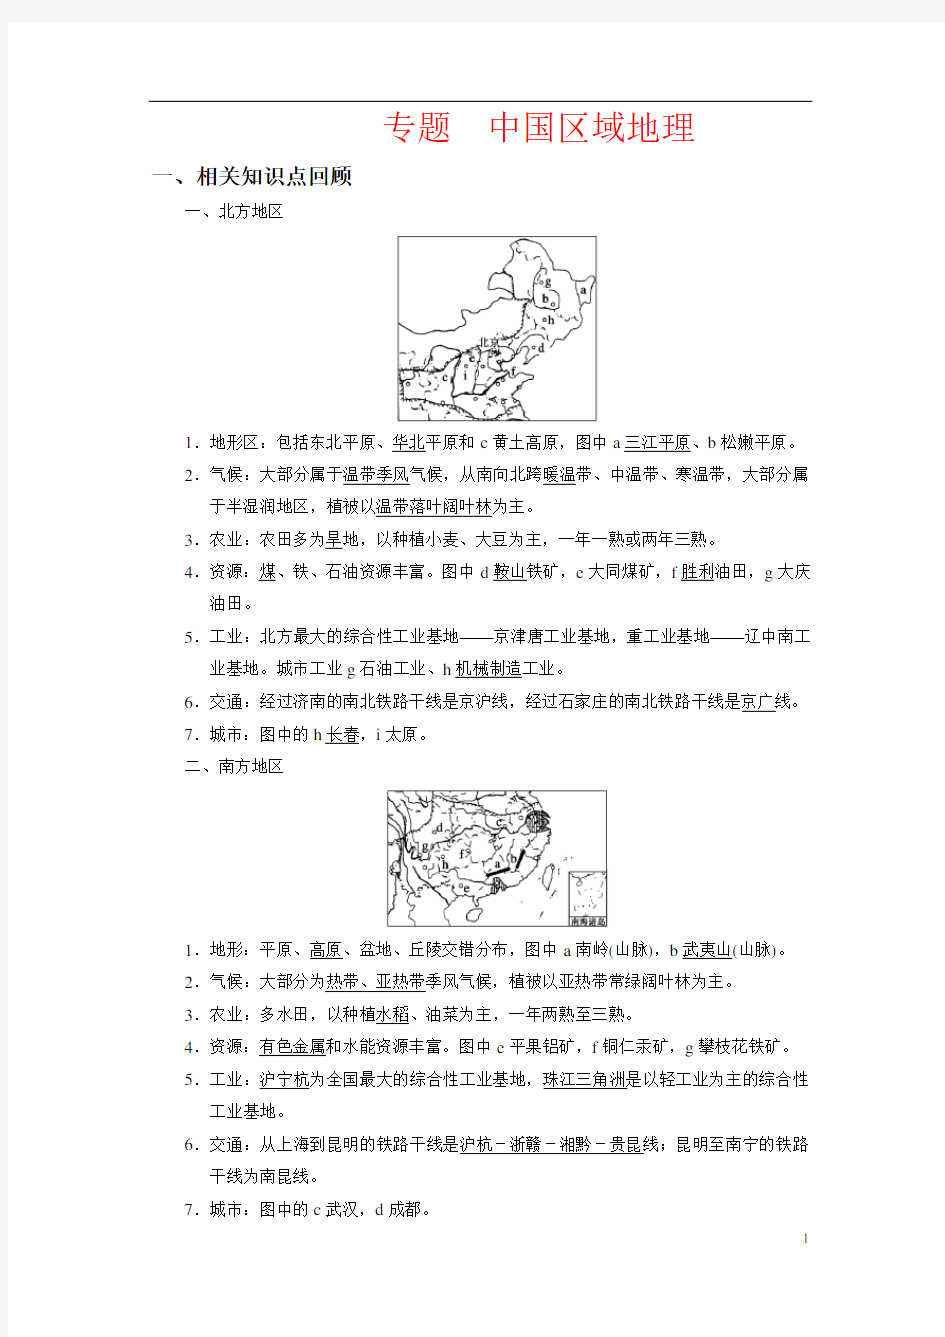 中国区域地理复习讲义(教师版)资料